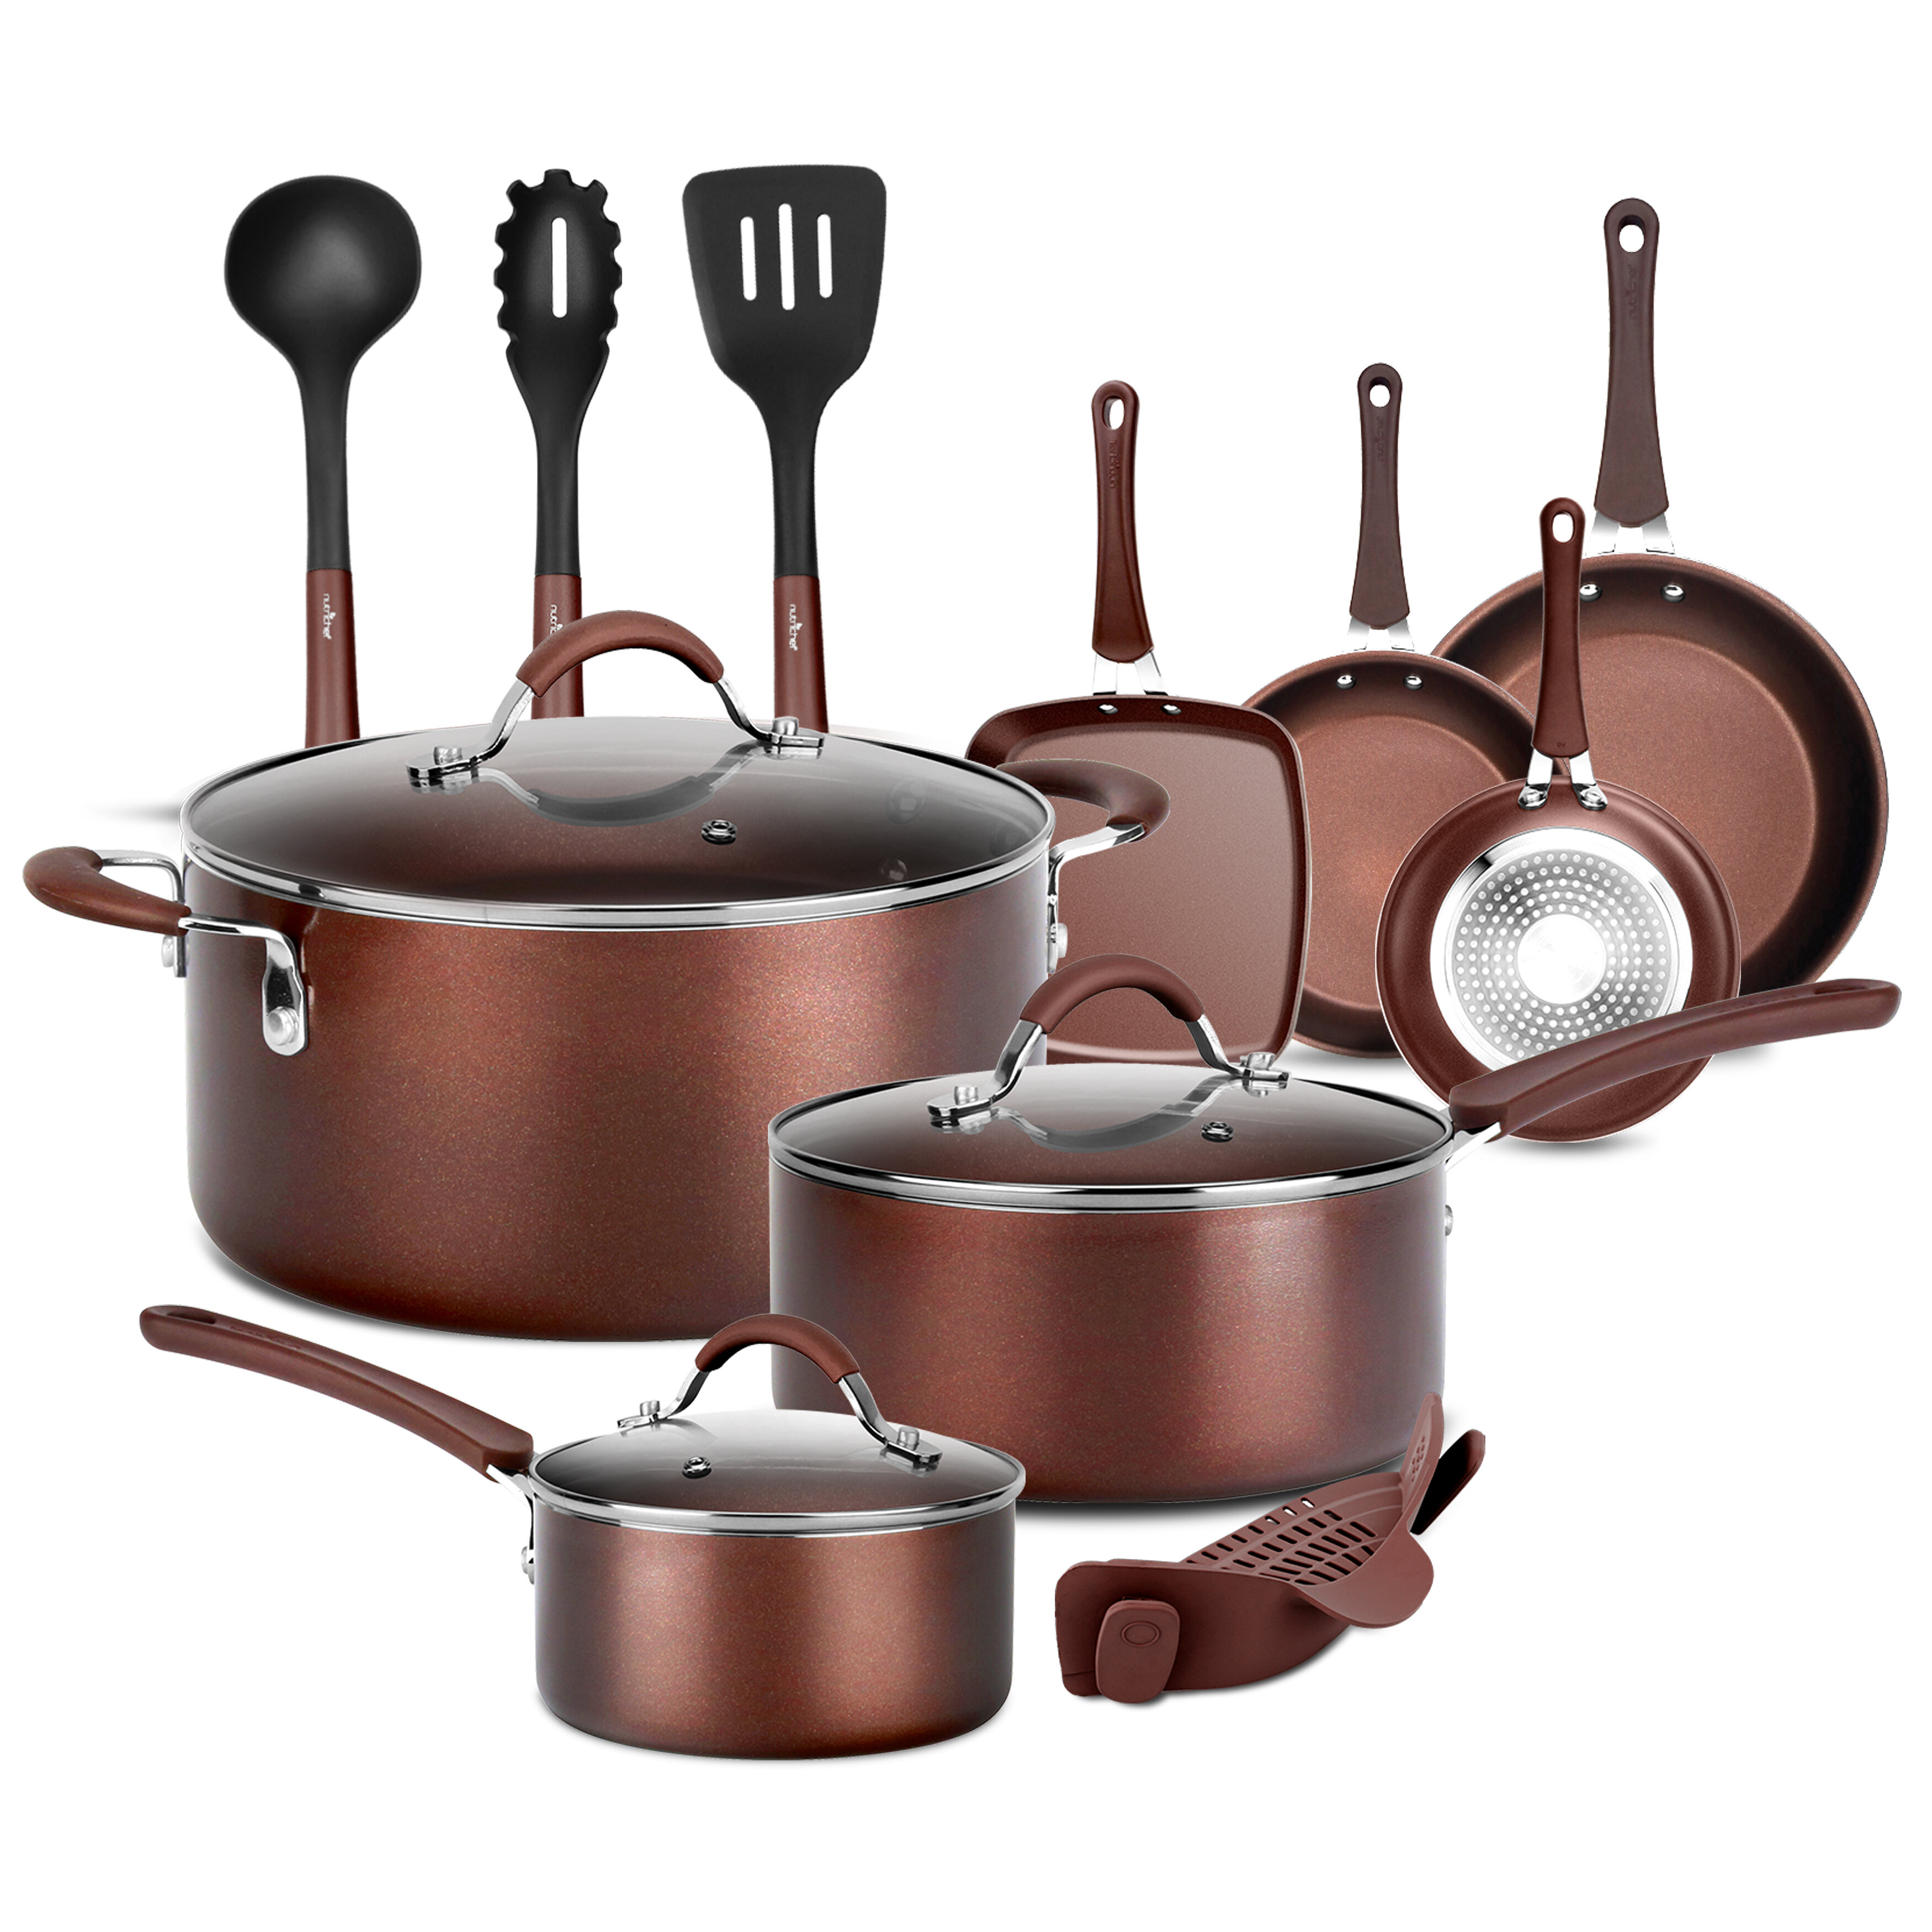 https://assets.wfcdn.com/im/13569673/compr-r85/1921/192122440/14-piece-non-stick-aluminum-cookware-set.jpg